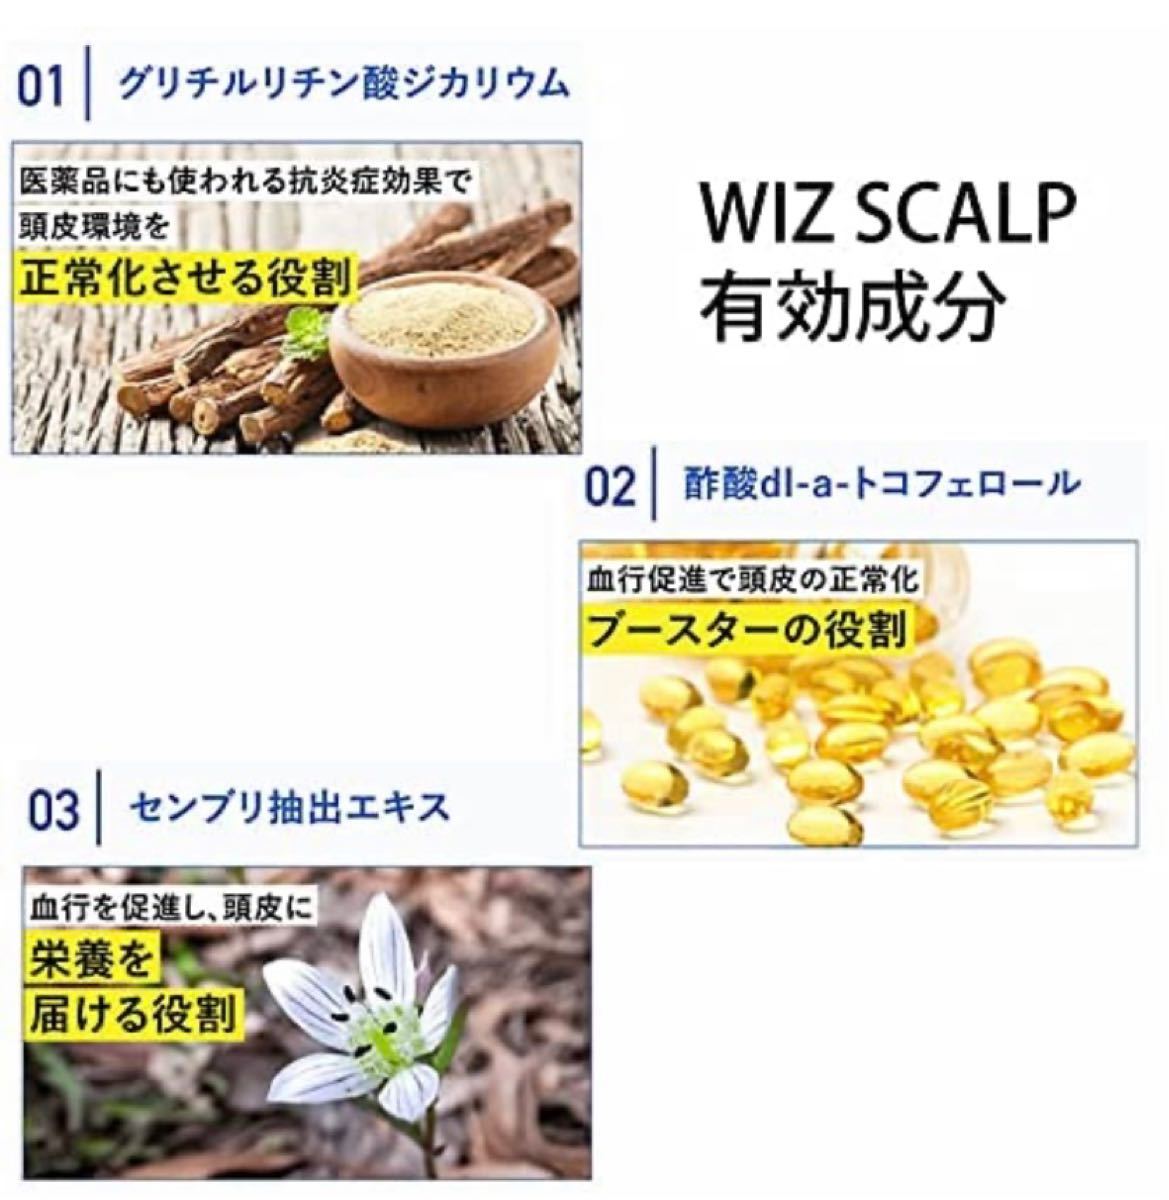 ウィズスカルプ01 WIZ SCALP 01 育毛剤